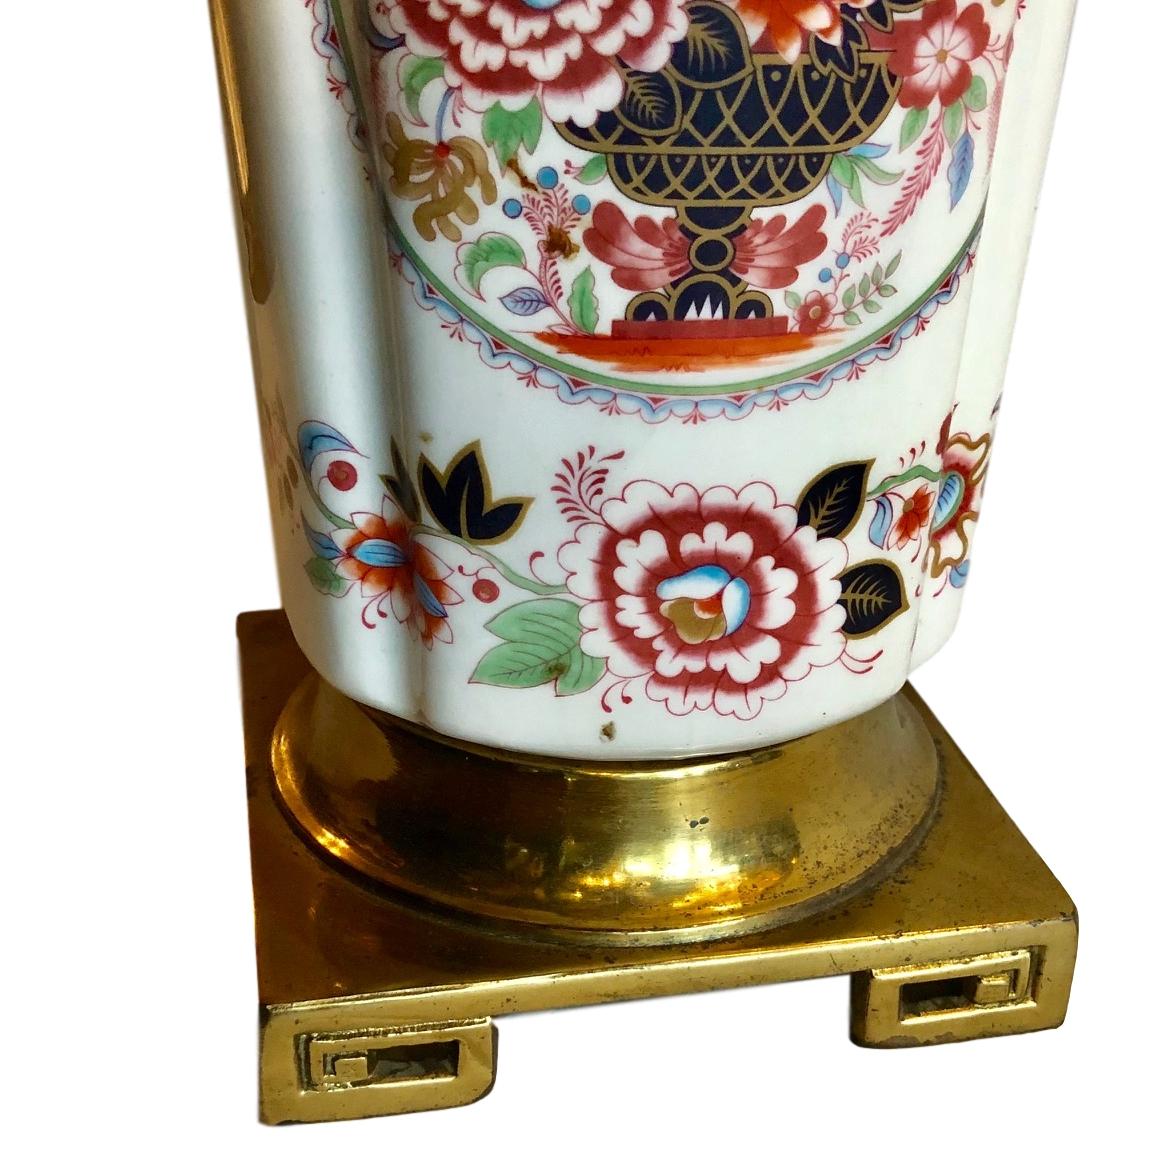 Paar französische Chinoiserie-Porzellan-Tischlampen aus den 1940er Jahren mit Blumendekor auf dem Korpus und Bronzesockel.

Abmessungen:
Höhe des Körpers: 18?